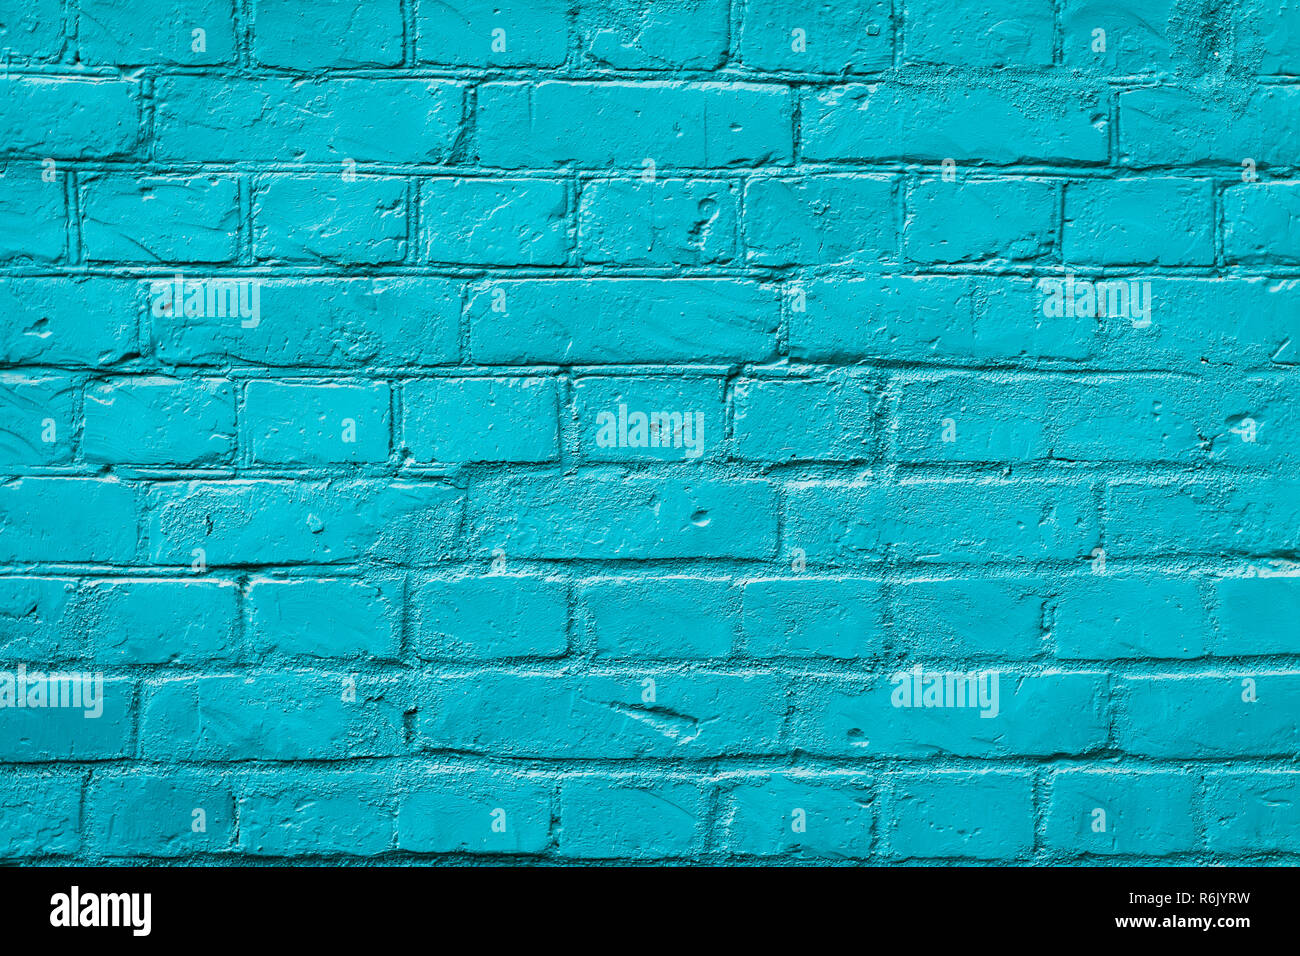 Brick Wall, blaue Farbe, im städtischen Hintergrund gemalt. Horizontale Textur. Für abstrakte Hintergrund, Muster, Hintergrund oder Banner Design Stockfoto